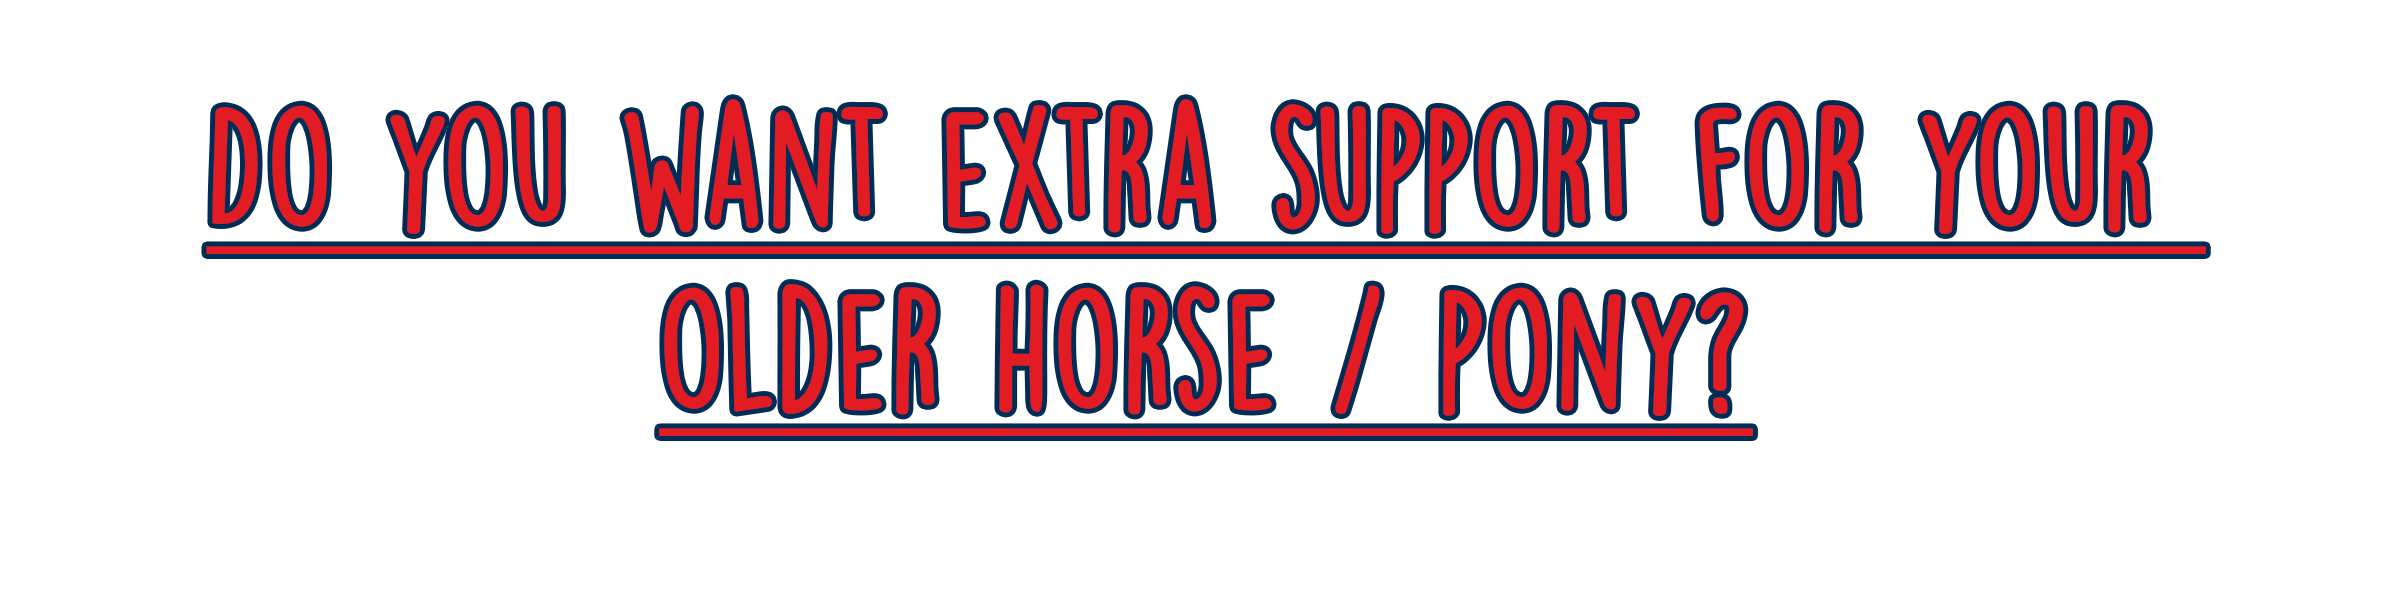 support-older-horse.png